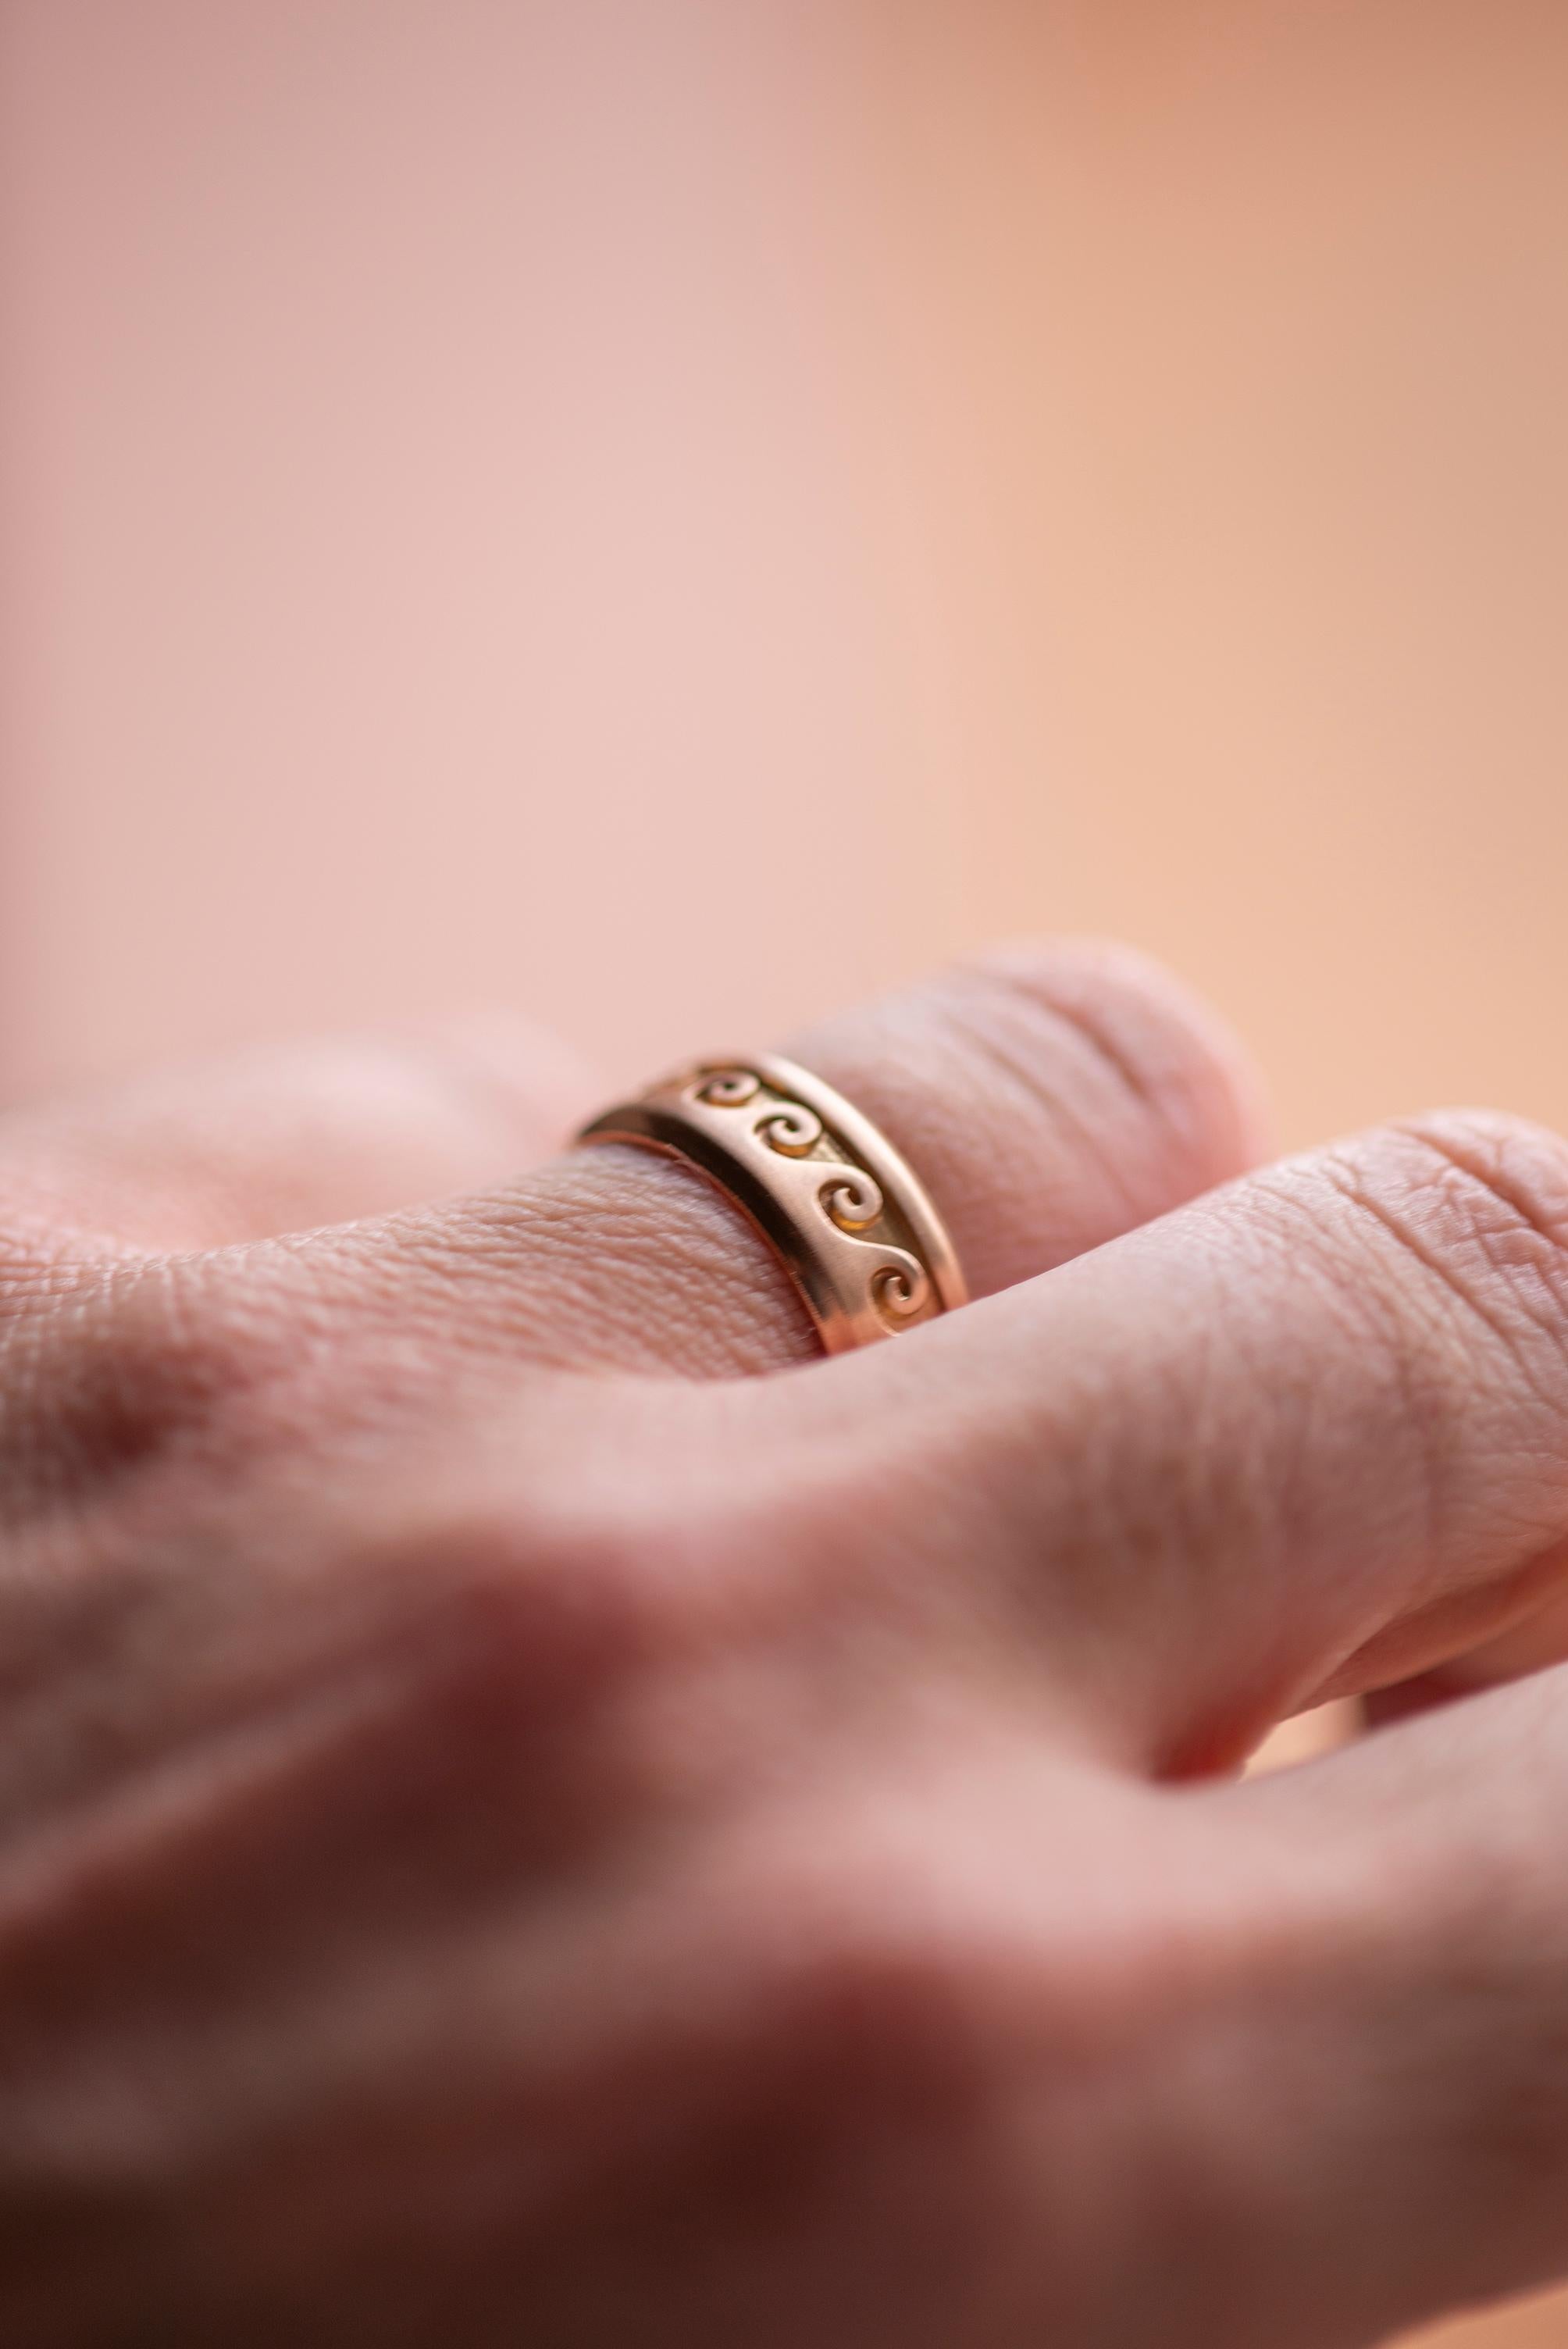 Anpassbarer 18 Karat Rose Gold Band Ring 
Hier gibt es einen wunderschönen Designring, handgefertigt aus 18 Karat Roségold und mit einer geprägten Welle verziert.
Dieser schöne Prägeeffekt wird durch eine feine Technik erzielt, bei der der Goldring